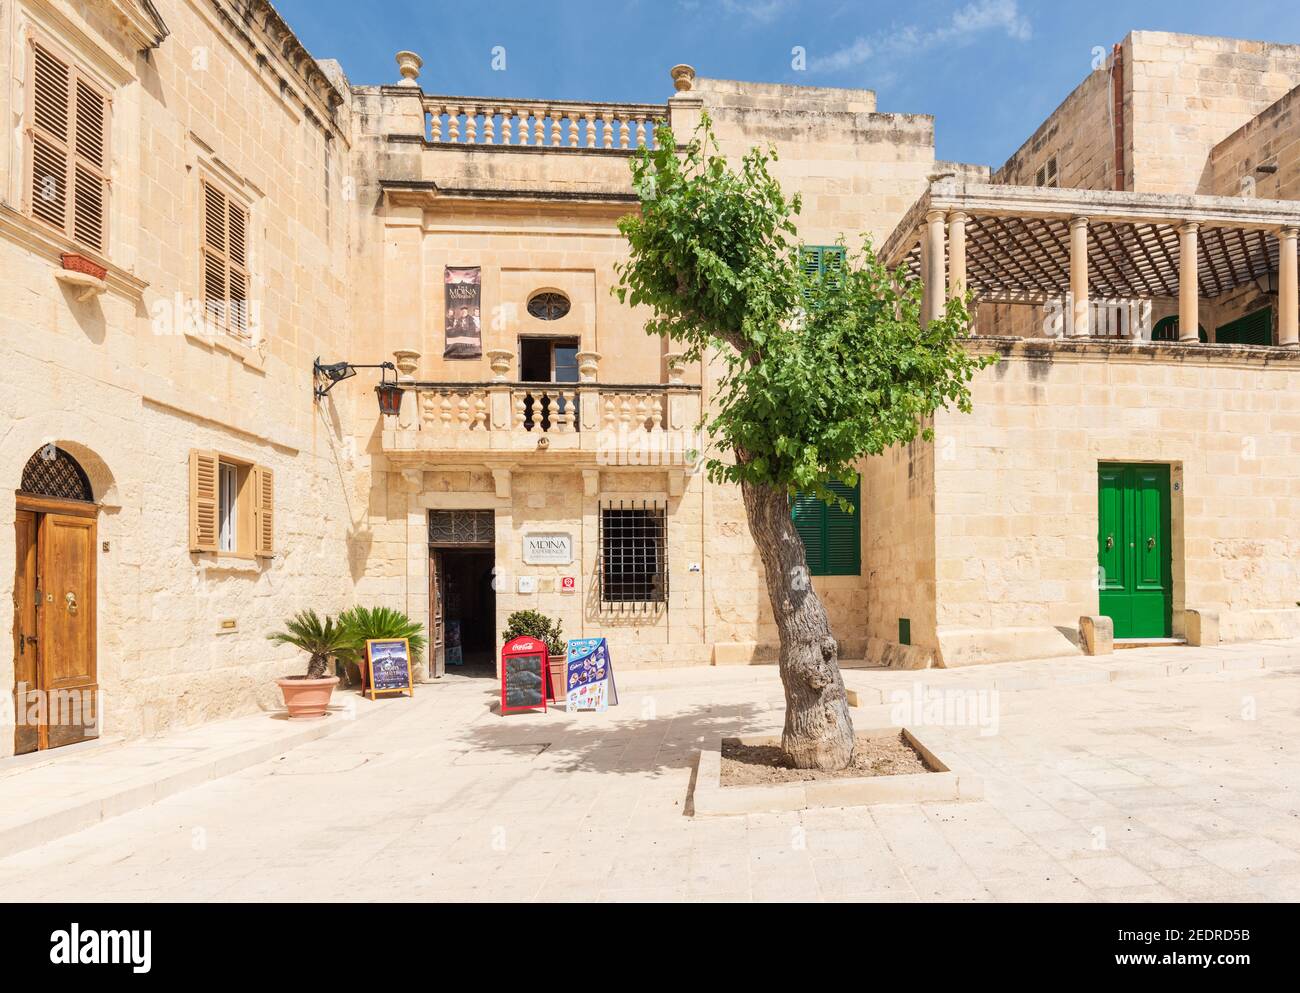 El centro Mdina Experience es una atracción turística en la Plaza de la Mezquita Mdina Malta Foto de stock